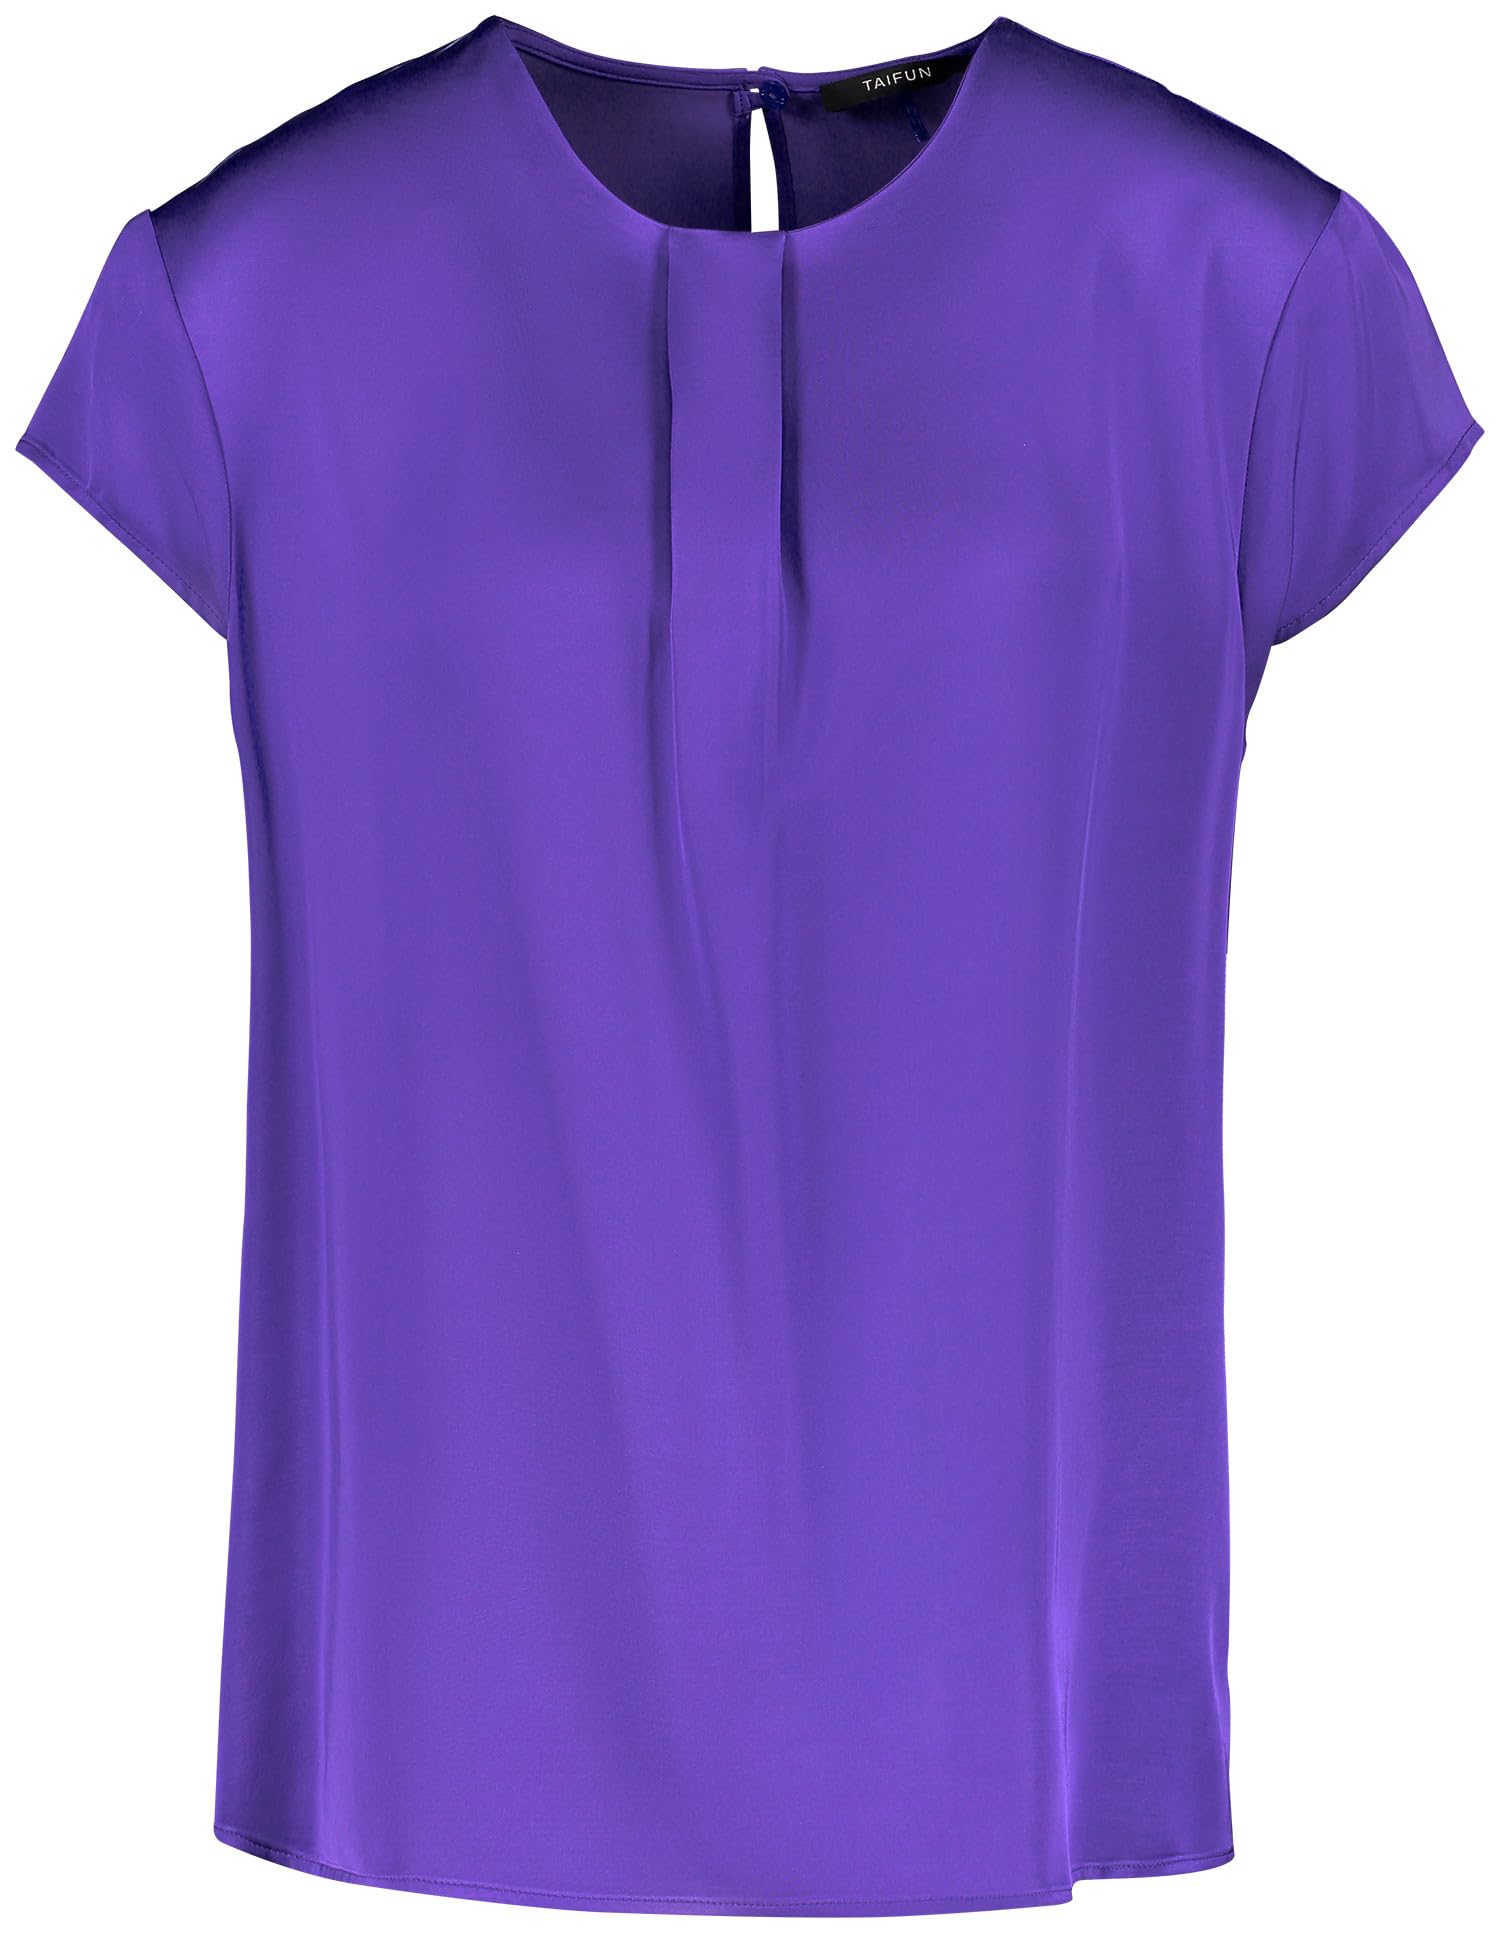 Taifun Damen Feines Blusenshirt mit kurzem Arm Kurzarm unifarben Purple Ink 44